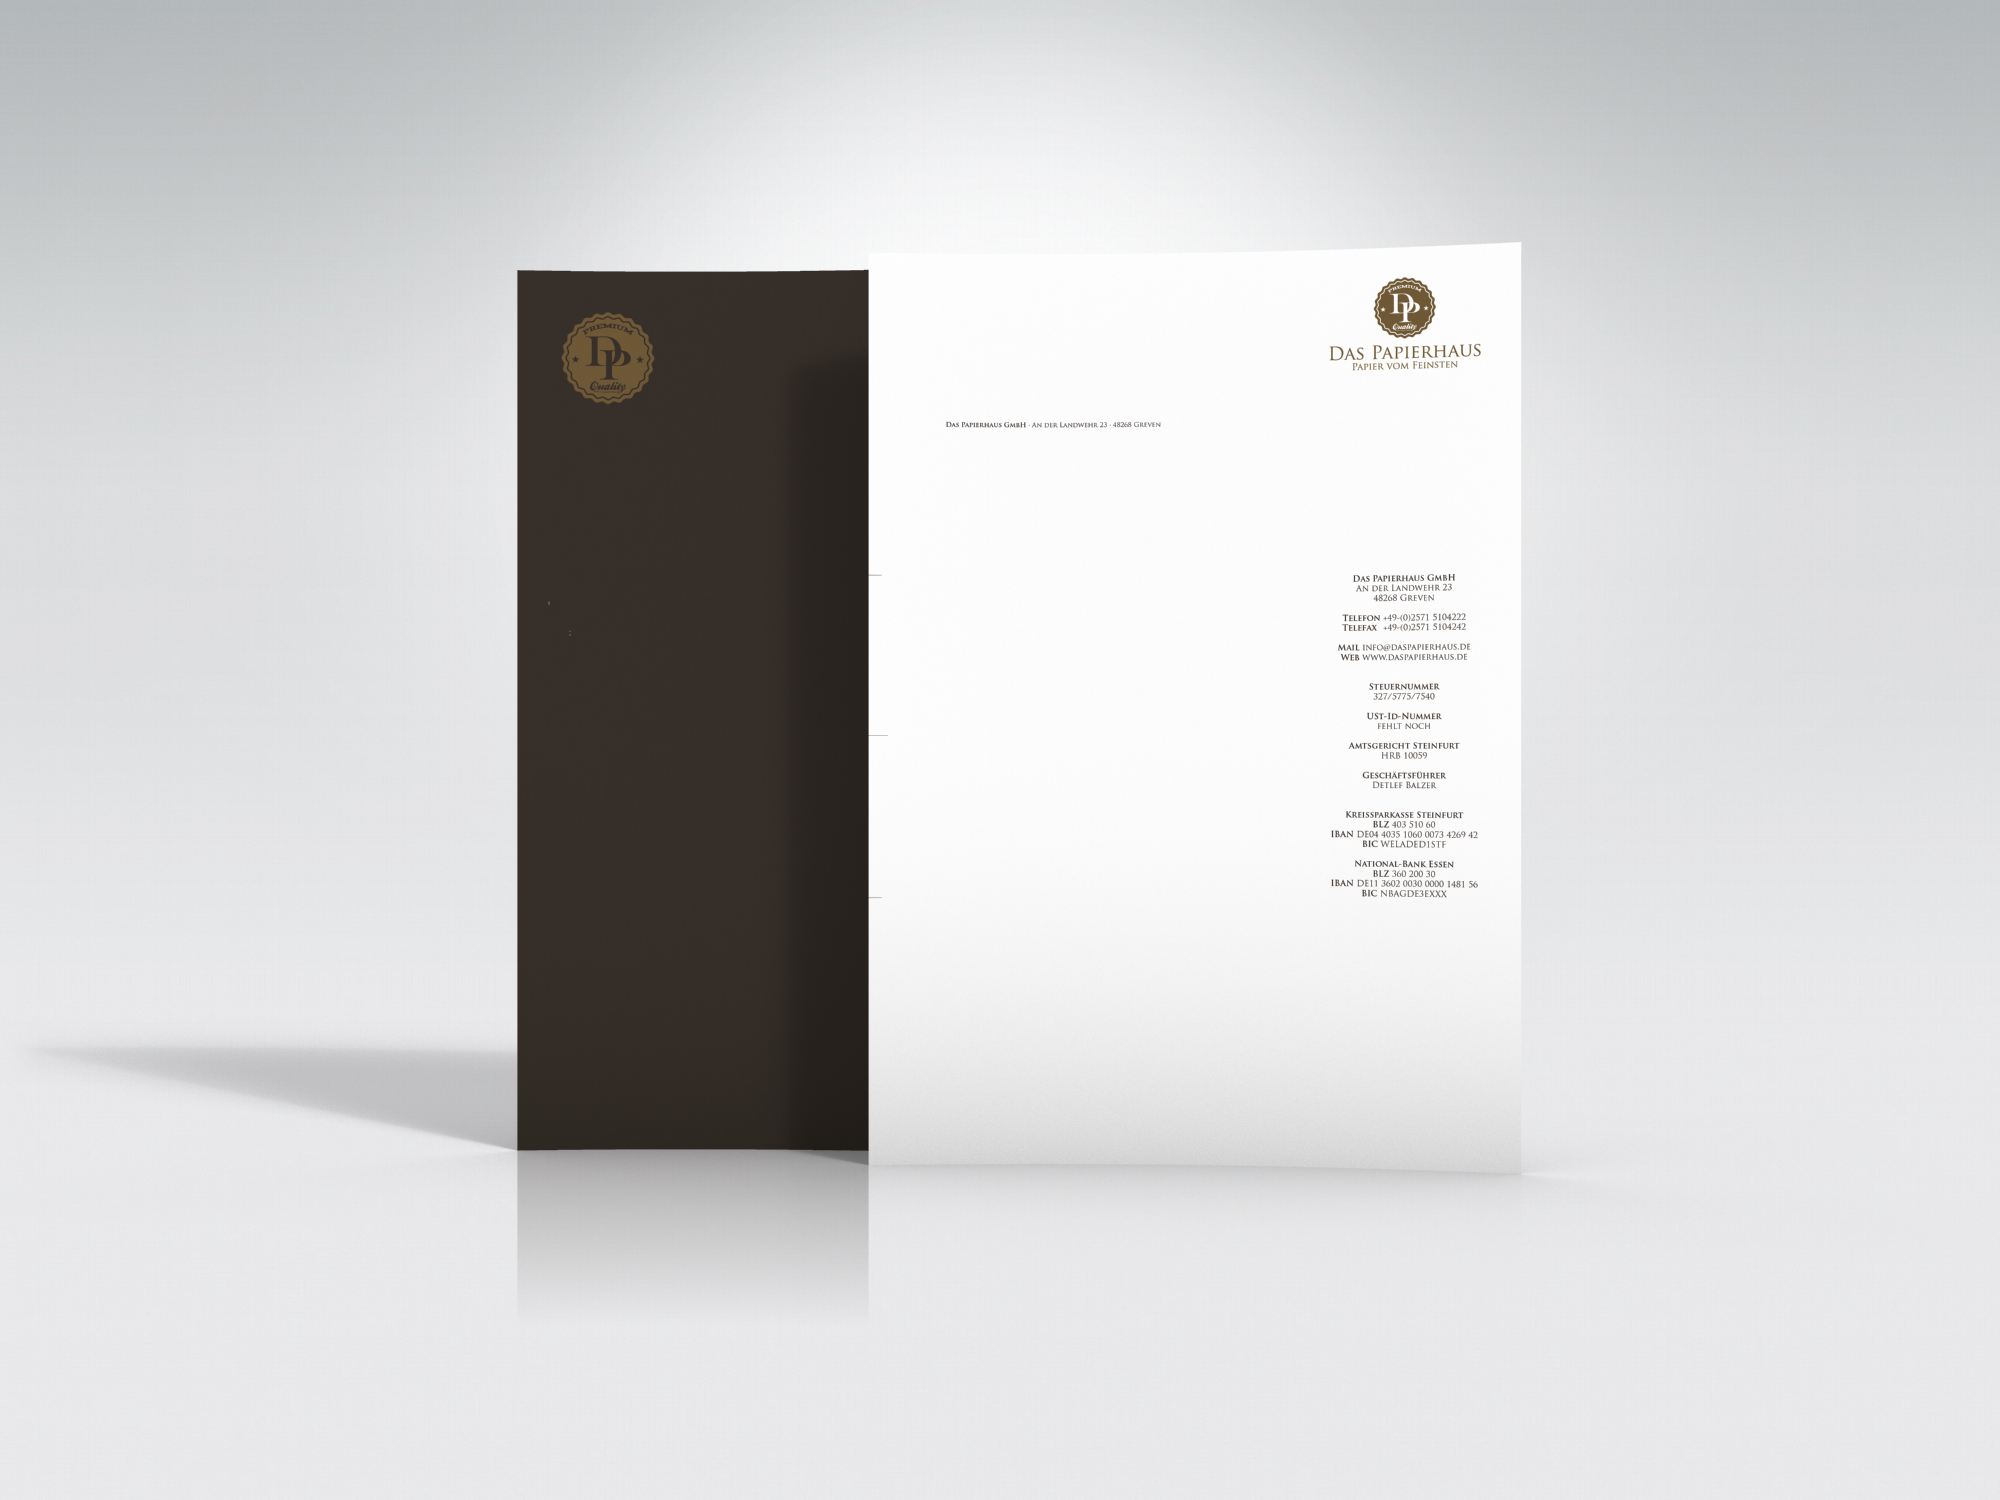 daspapierhaus - Hochwertige Briefpapiere in Premium-Qualität gedruckt